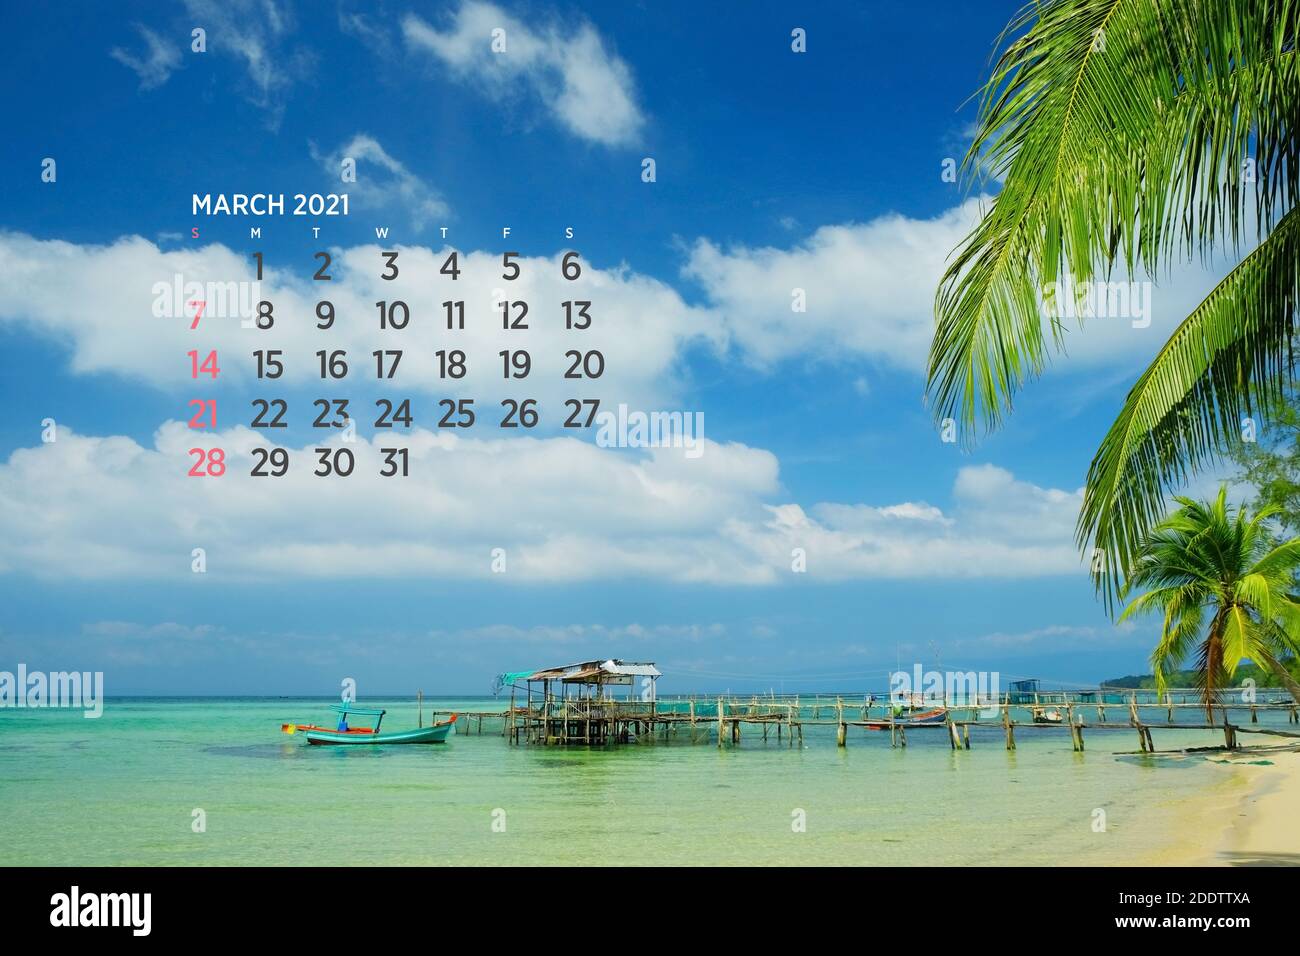 Calendario Marzo 2021. Mar, océano, playa, tropical, tema de la naturaleza. A2. 60 x 40 cm. 15.75 x 23.62 pulgadas Foto de stock